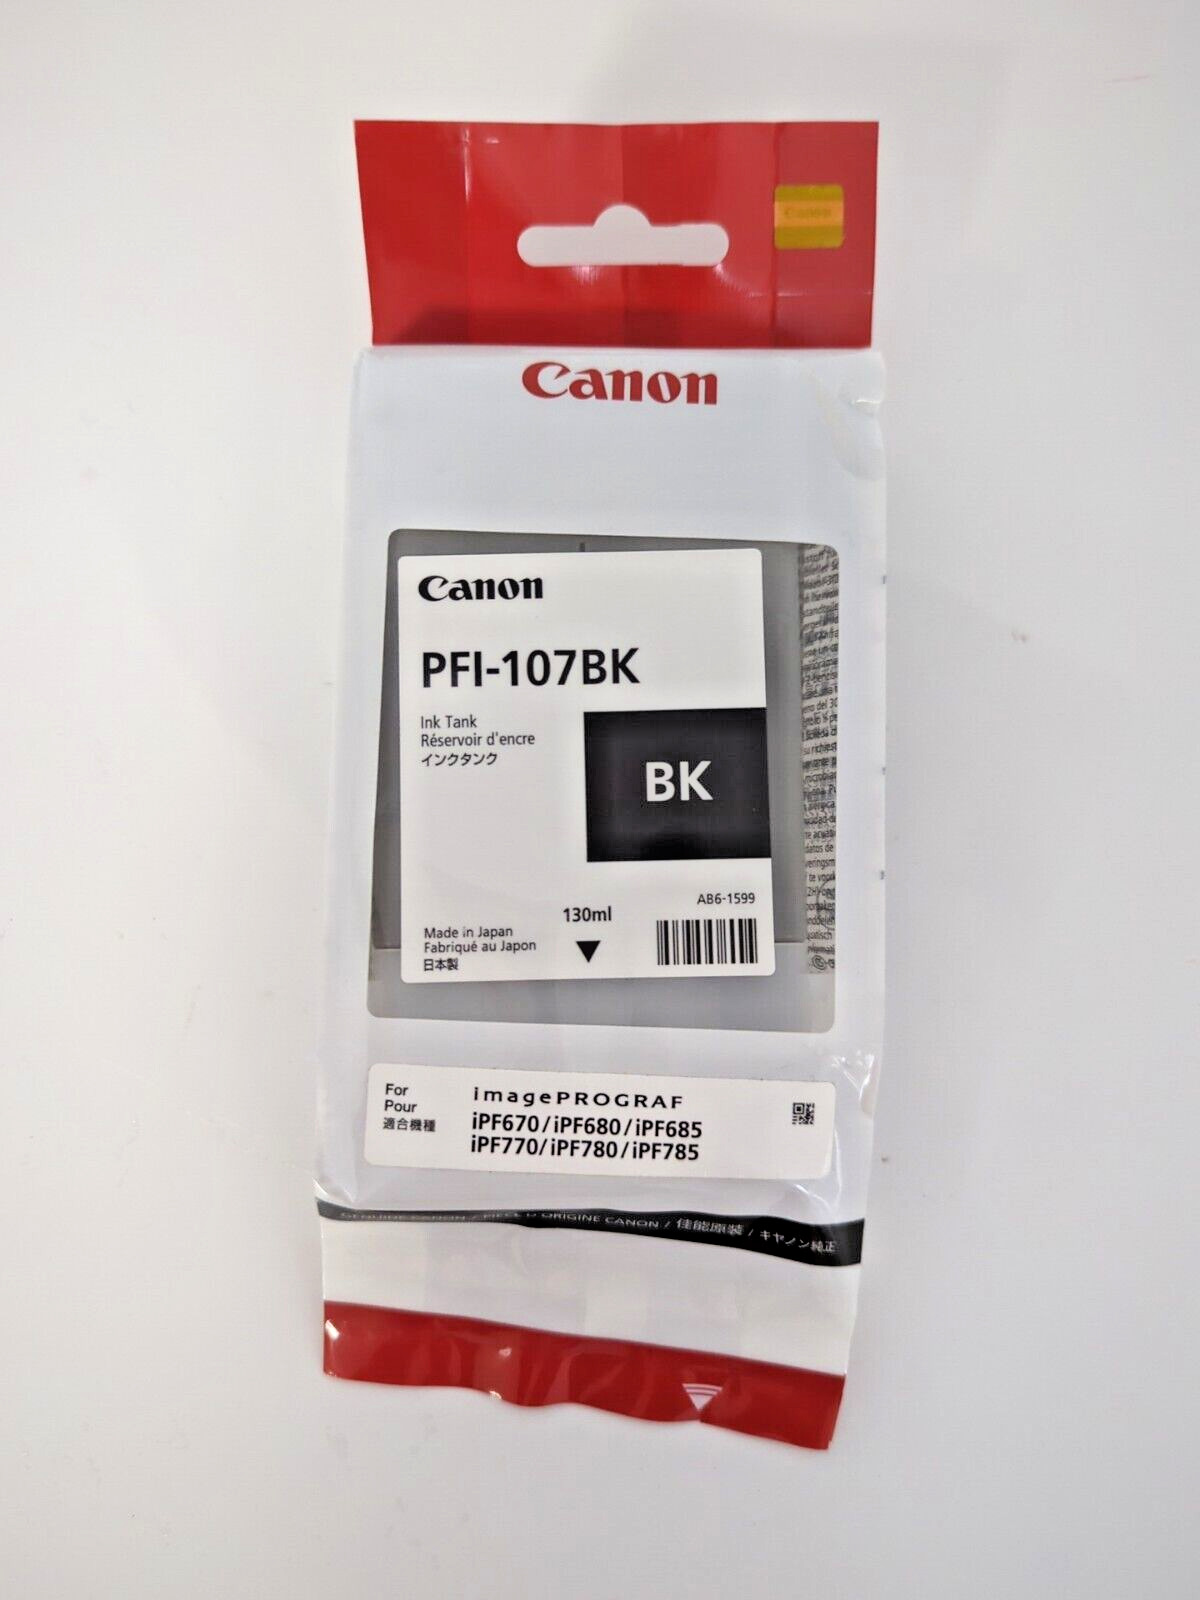 CANON PFI-107BK 130ml EXP. 2021 BLACK